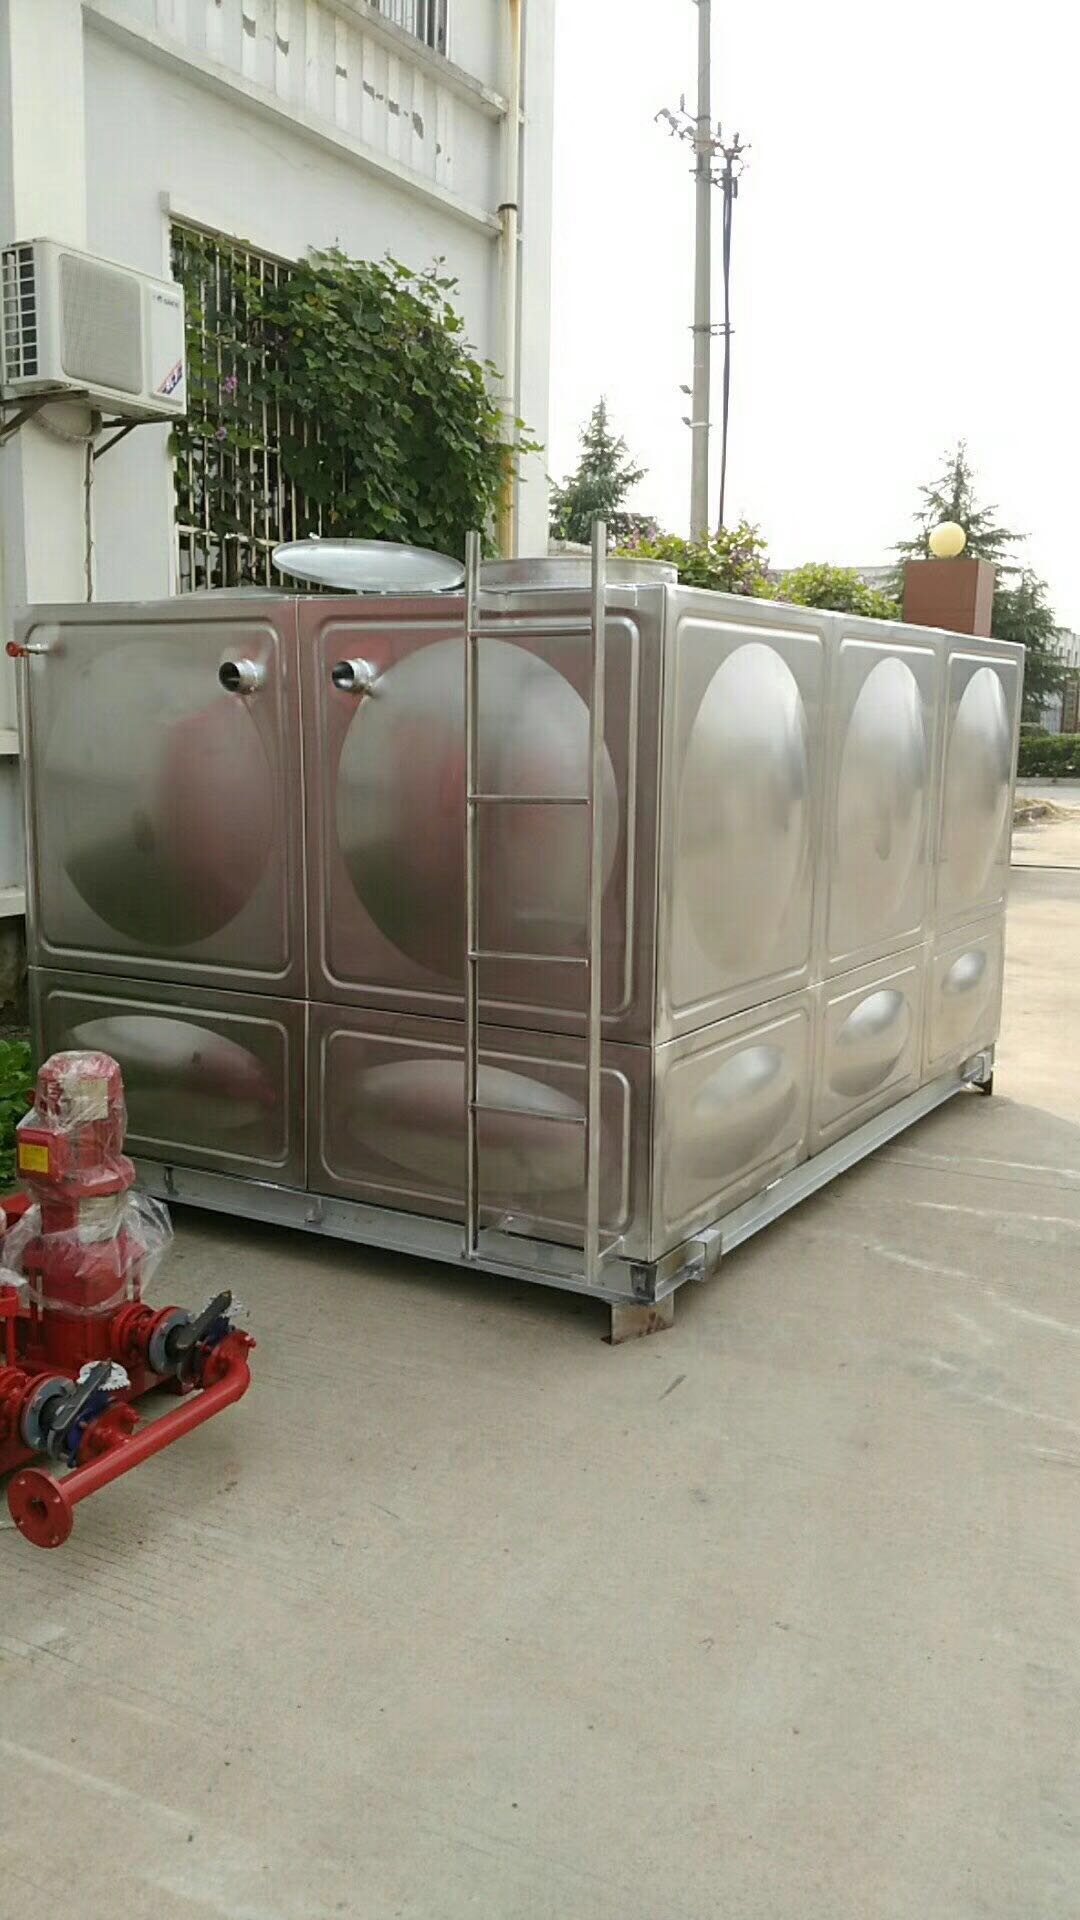 供应方形保温水箱 抚州不锈钢方形保温水箱厂家 消防水箱定做 保温水箱 生活水箱 圆形水箱价格